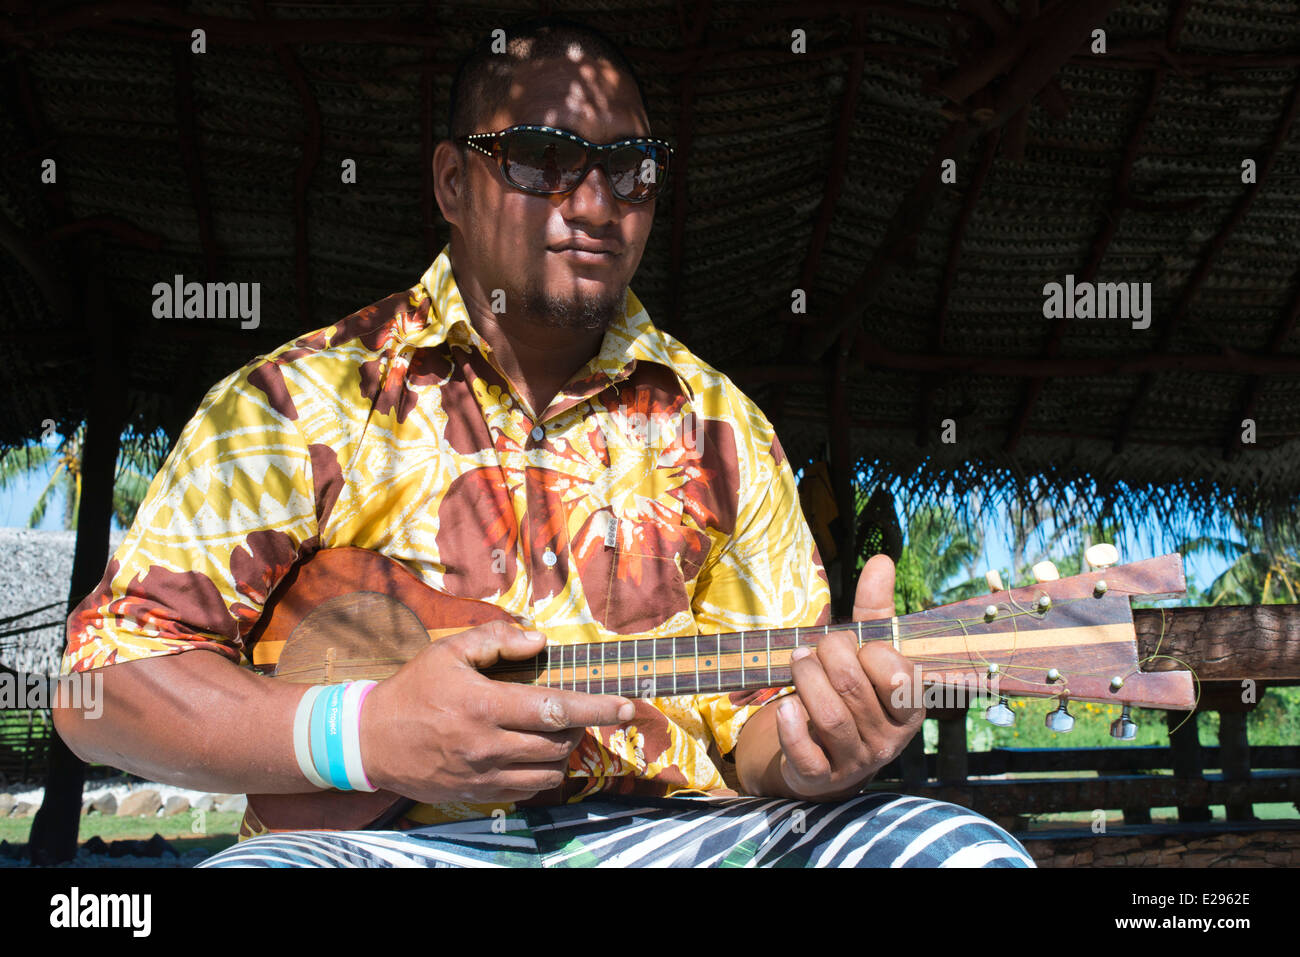 Aitutaki. L'île de Cook. Polynésie française. Océan Pacifique Sud. Jouant le ukulélé (guitare) typiquement polynésien à Aitutaki Punani Cultur Banque D'Images